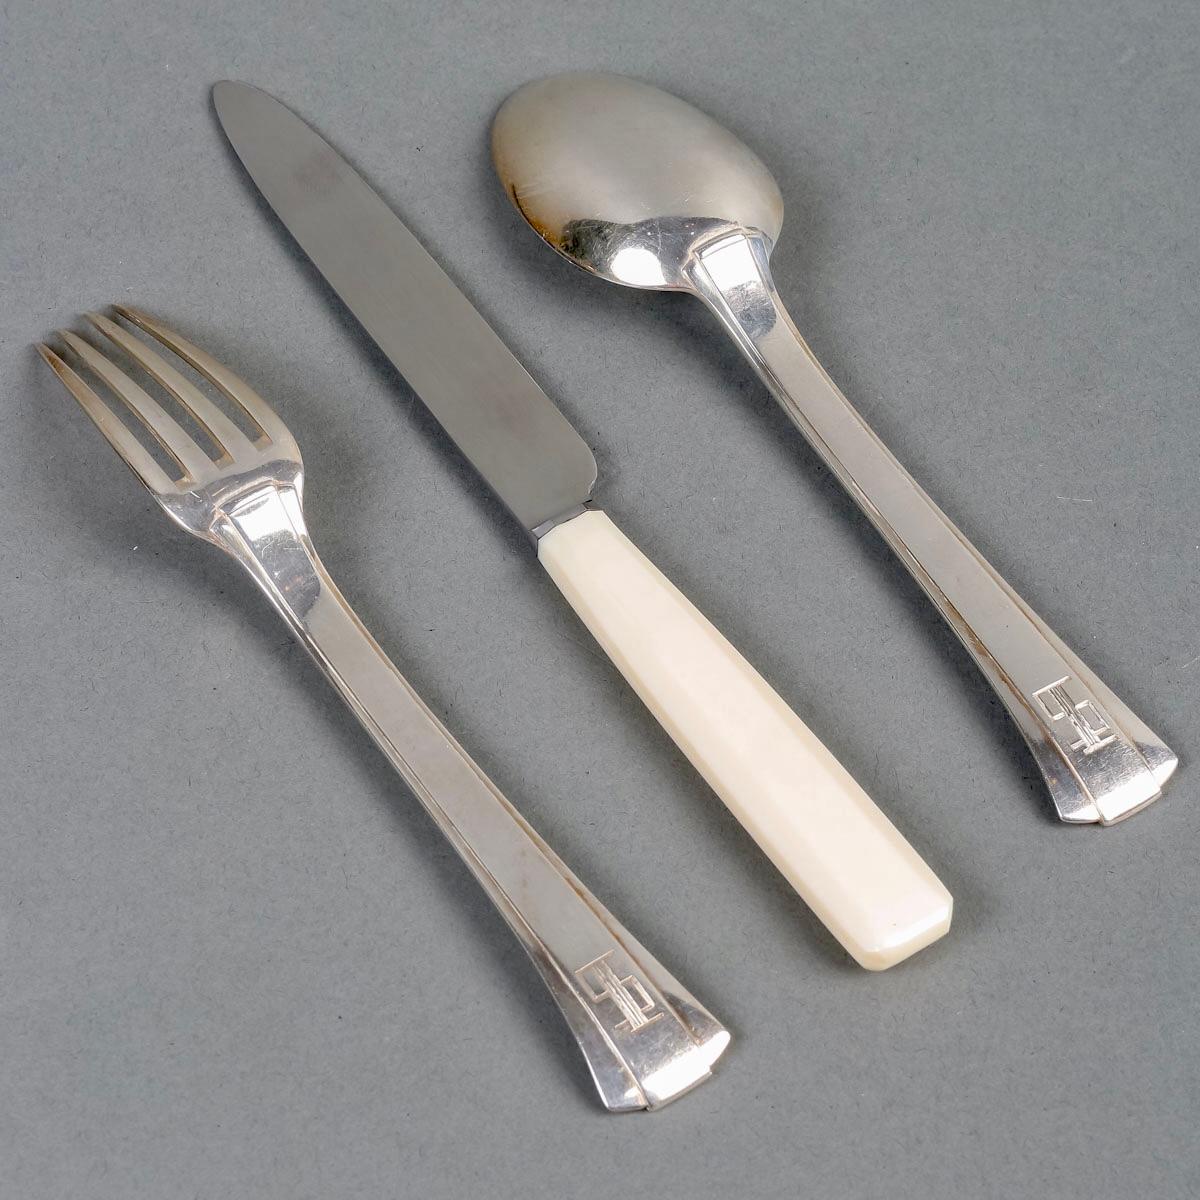 Jean E Puiforcat Cutlery Flatware Set Art Deco Papyrus Sterling Silver 80 Pieces 1